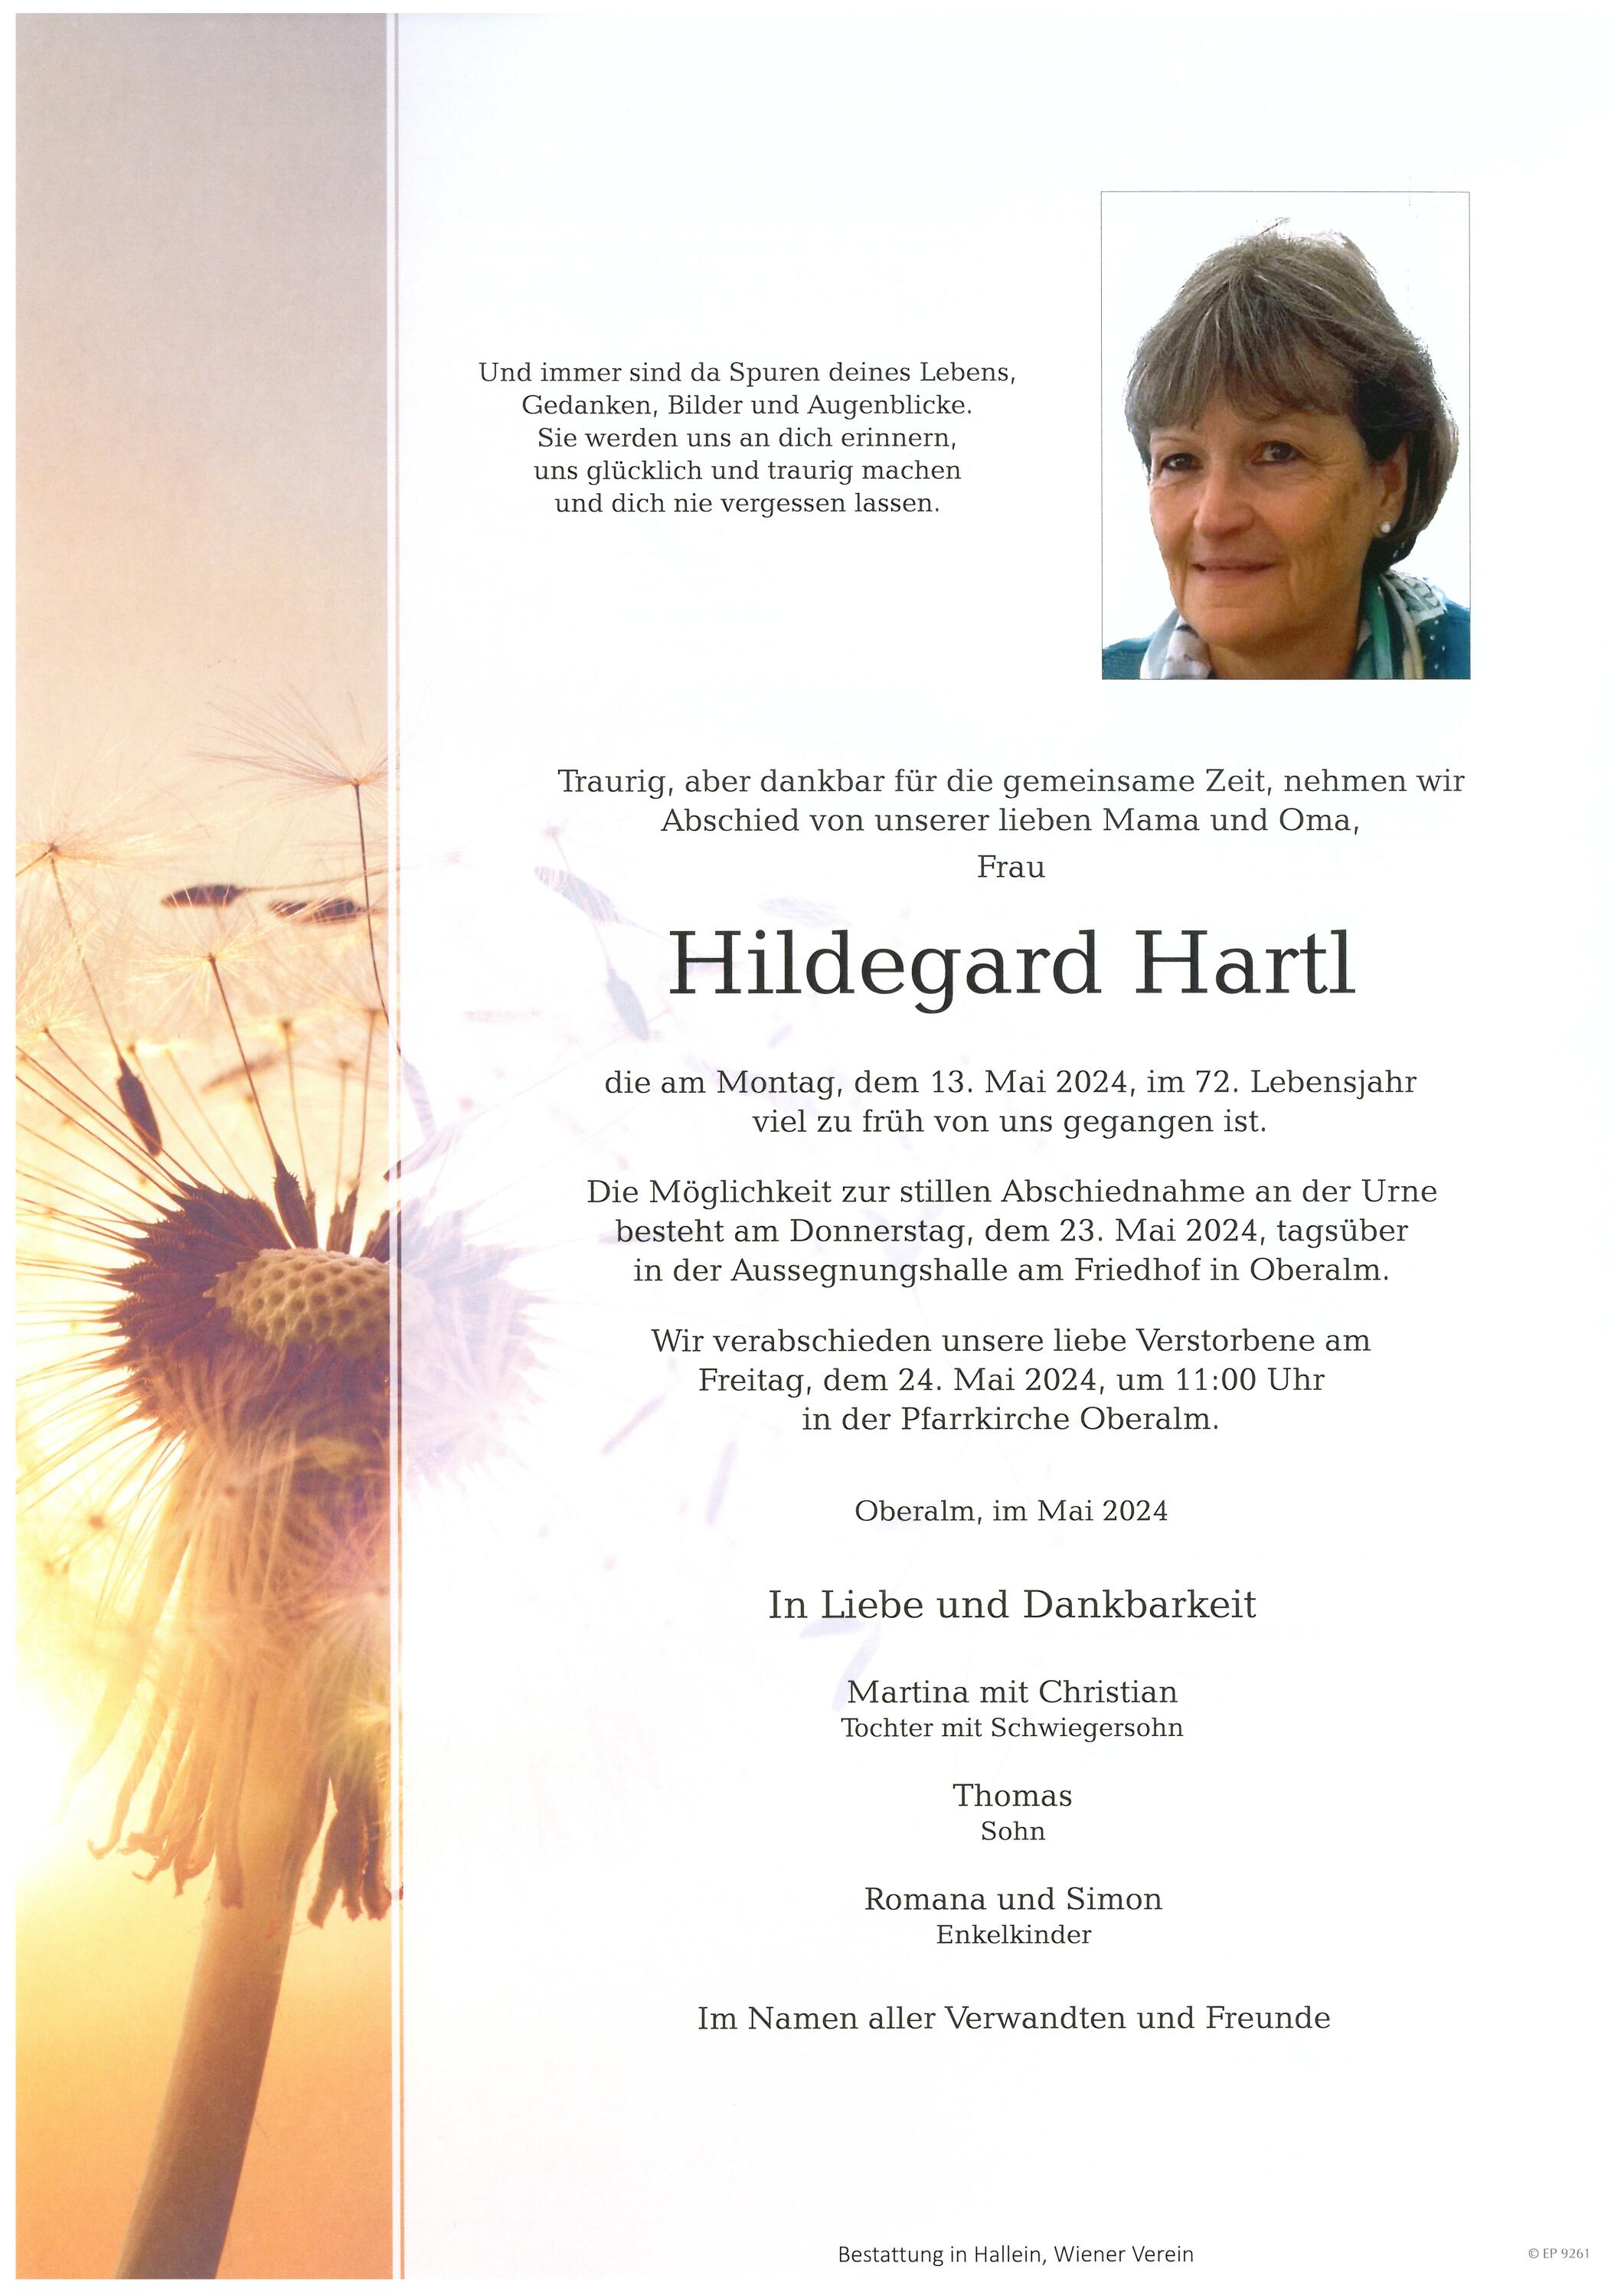 Hildegard Hartl